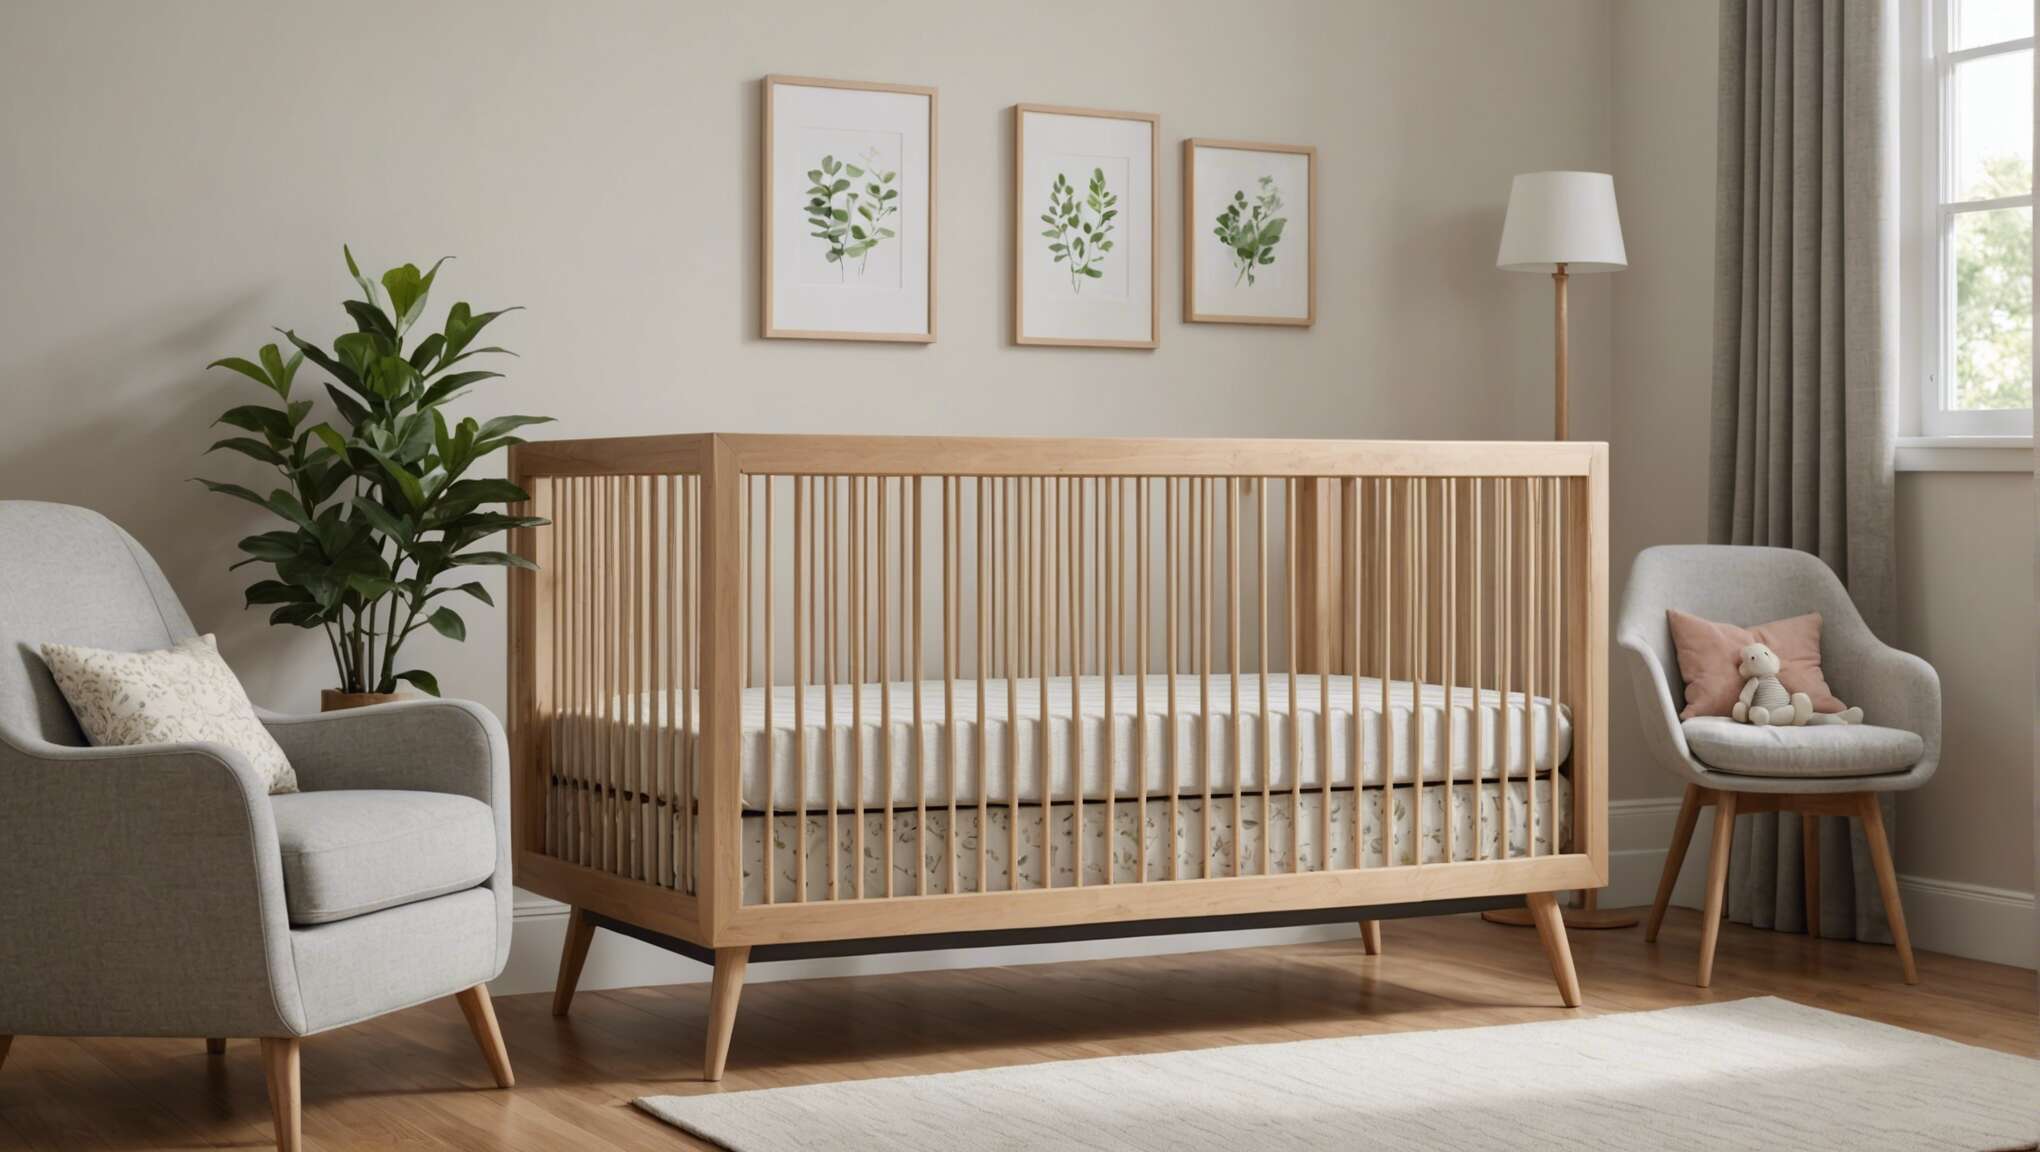 L'importance d'une décoration sobre et écoresponsable en chambre de bébé